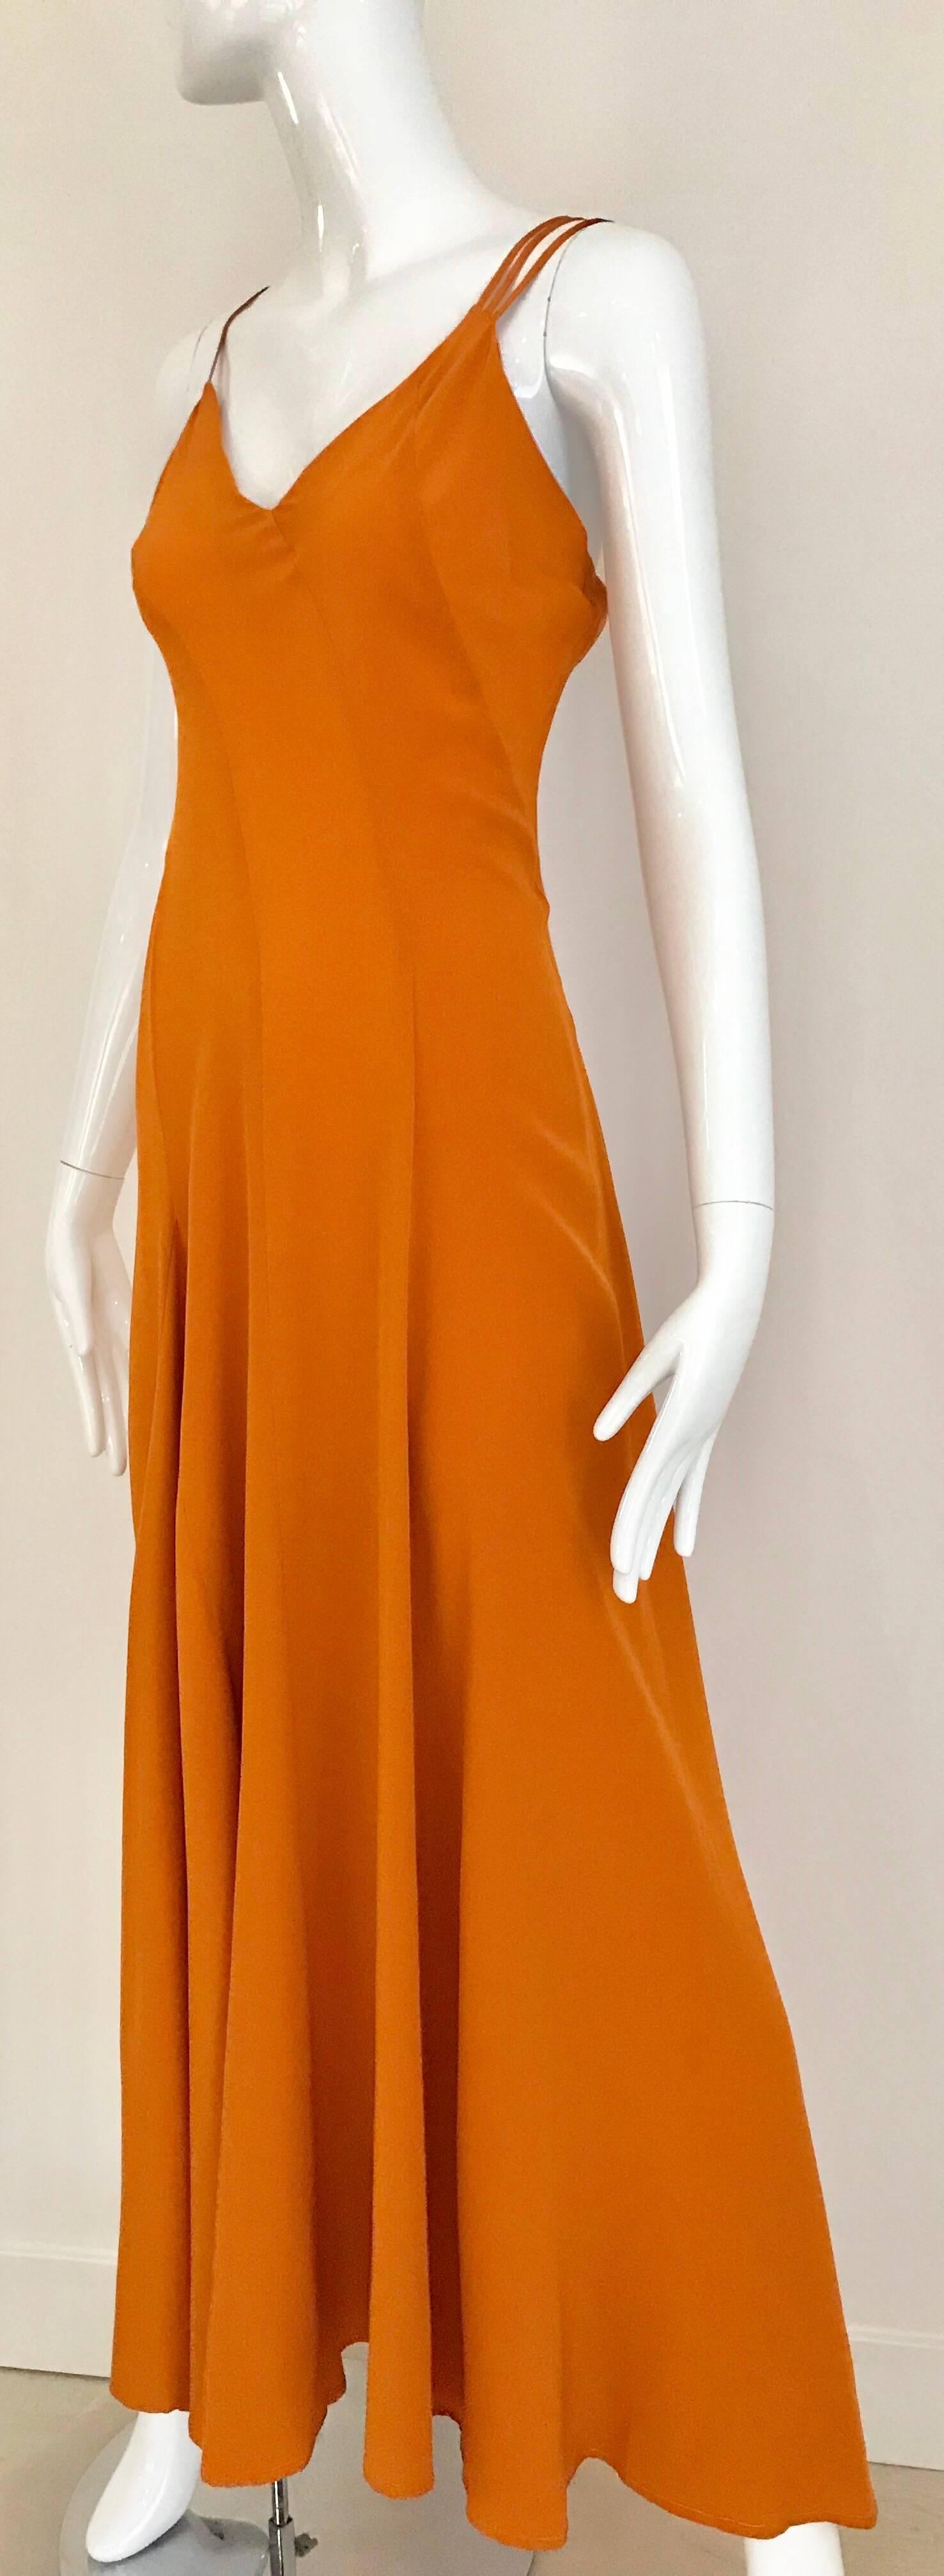 orange silk dress